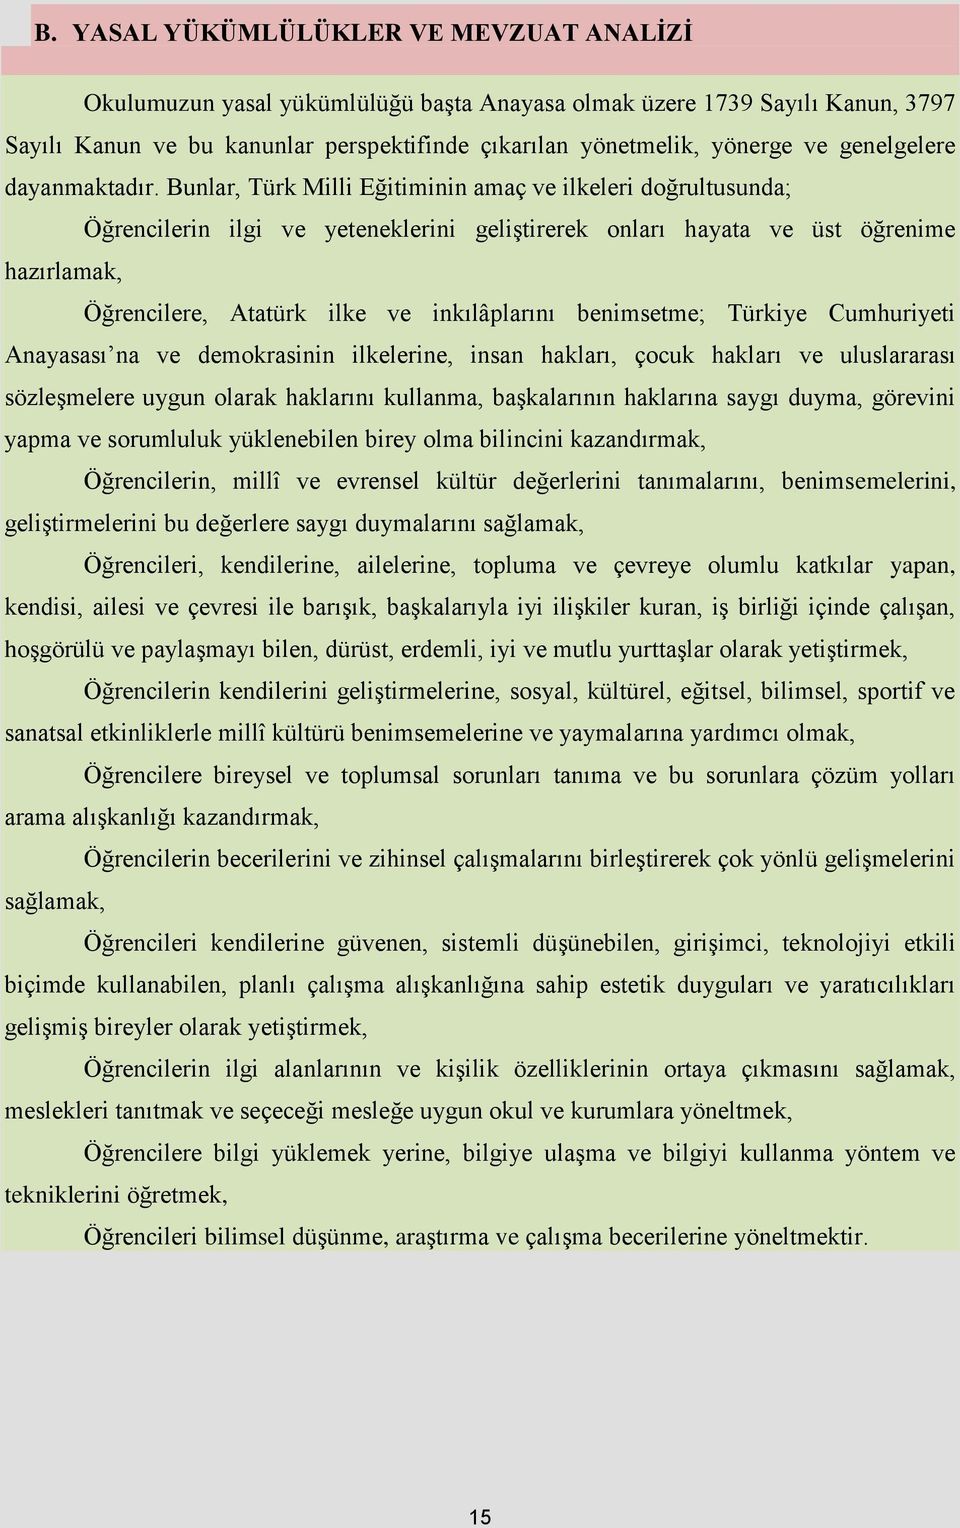 Bunlar, Türk Milli Eğitiminin amaç ve ilkeleri doğrultusunda; Öğrencilerin ilgi ve yeteneklerini geliştirerek onları hayata ve üst öğrenime hazırlamak, Öğrencilere, Atatürk ilke ve inkılâplarını